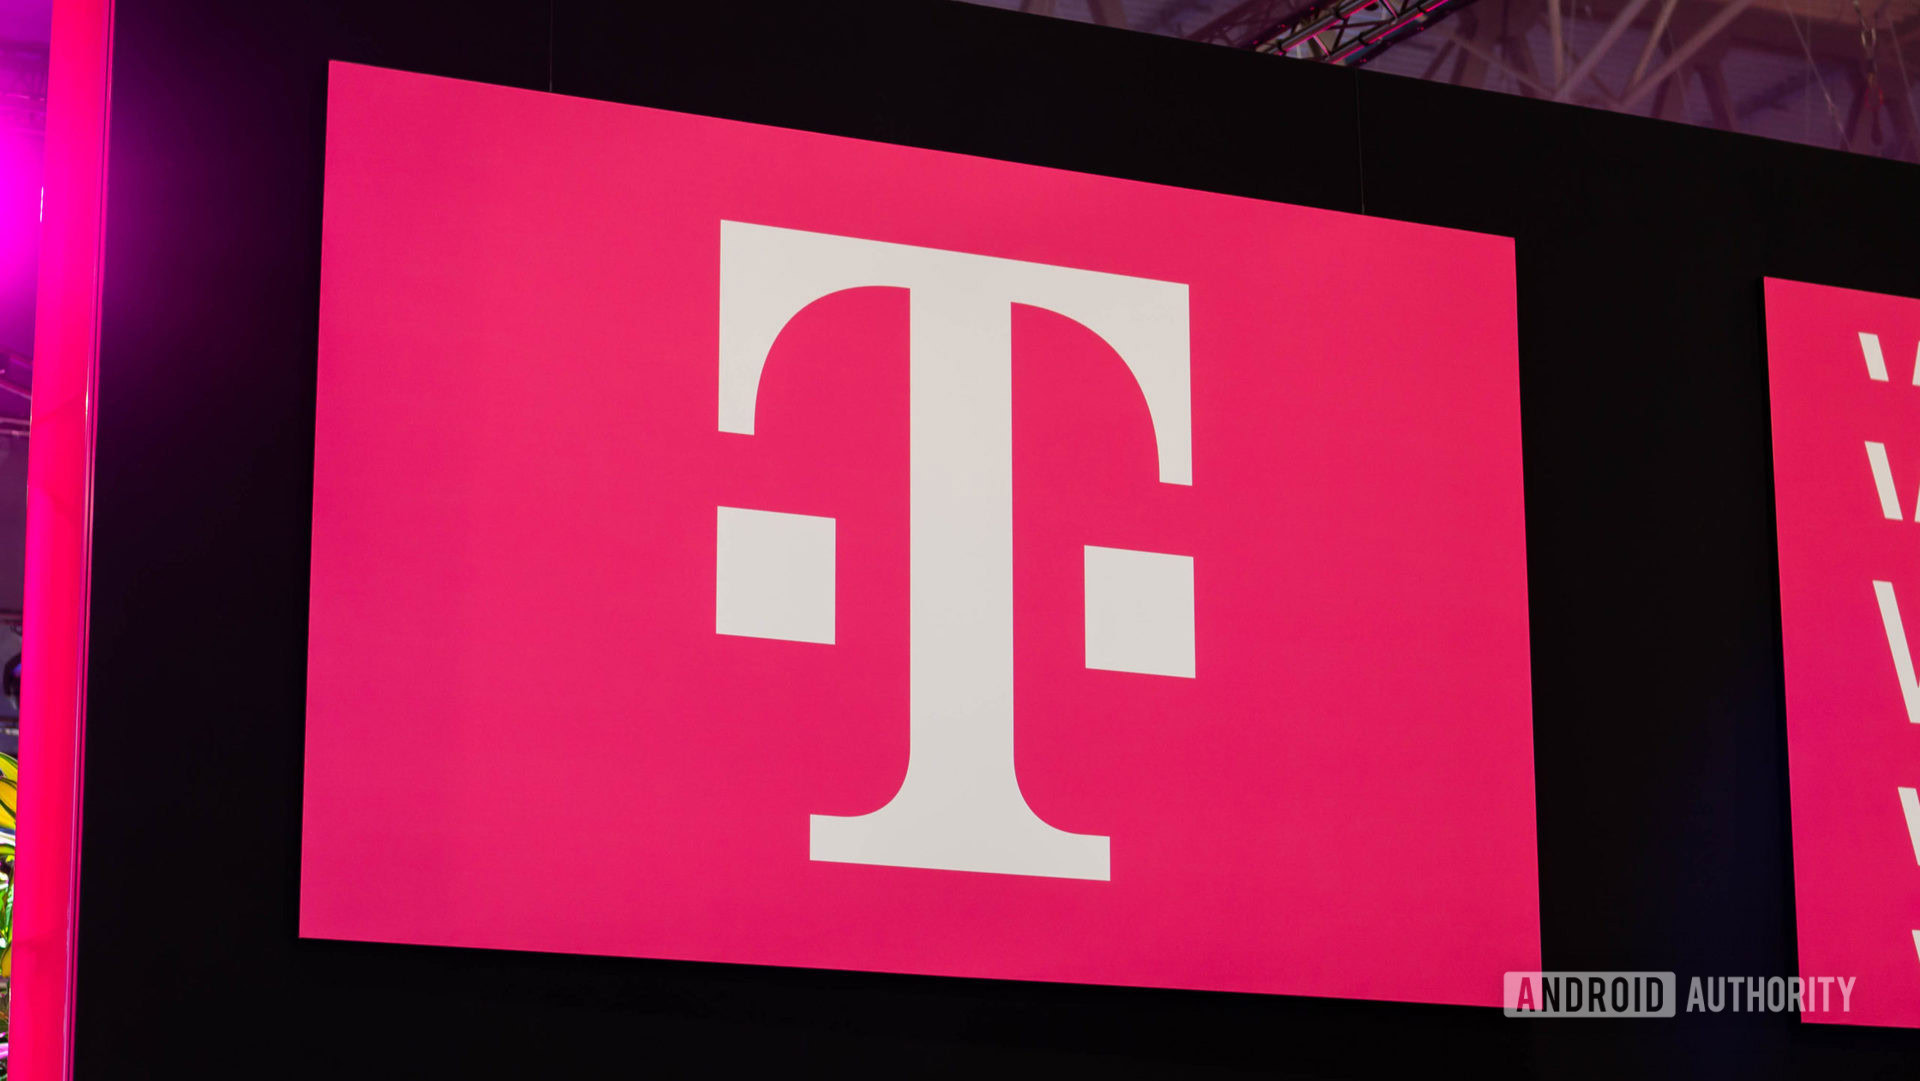 Logotipo de T Mobile en señal